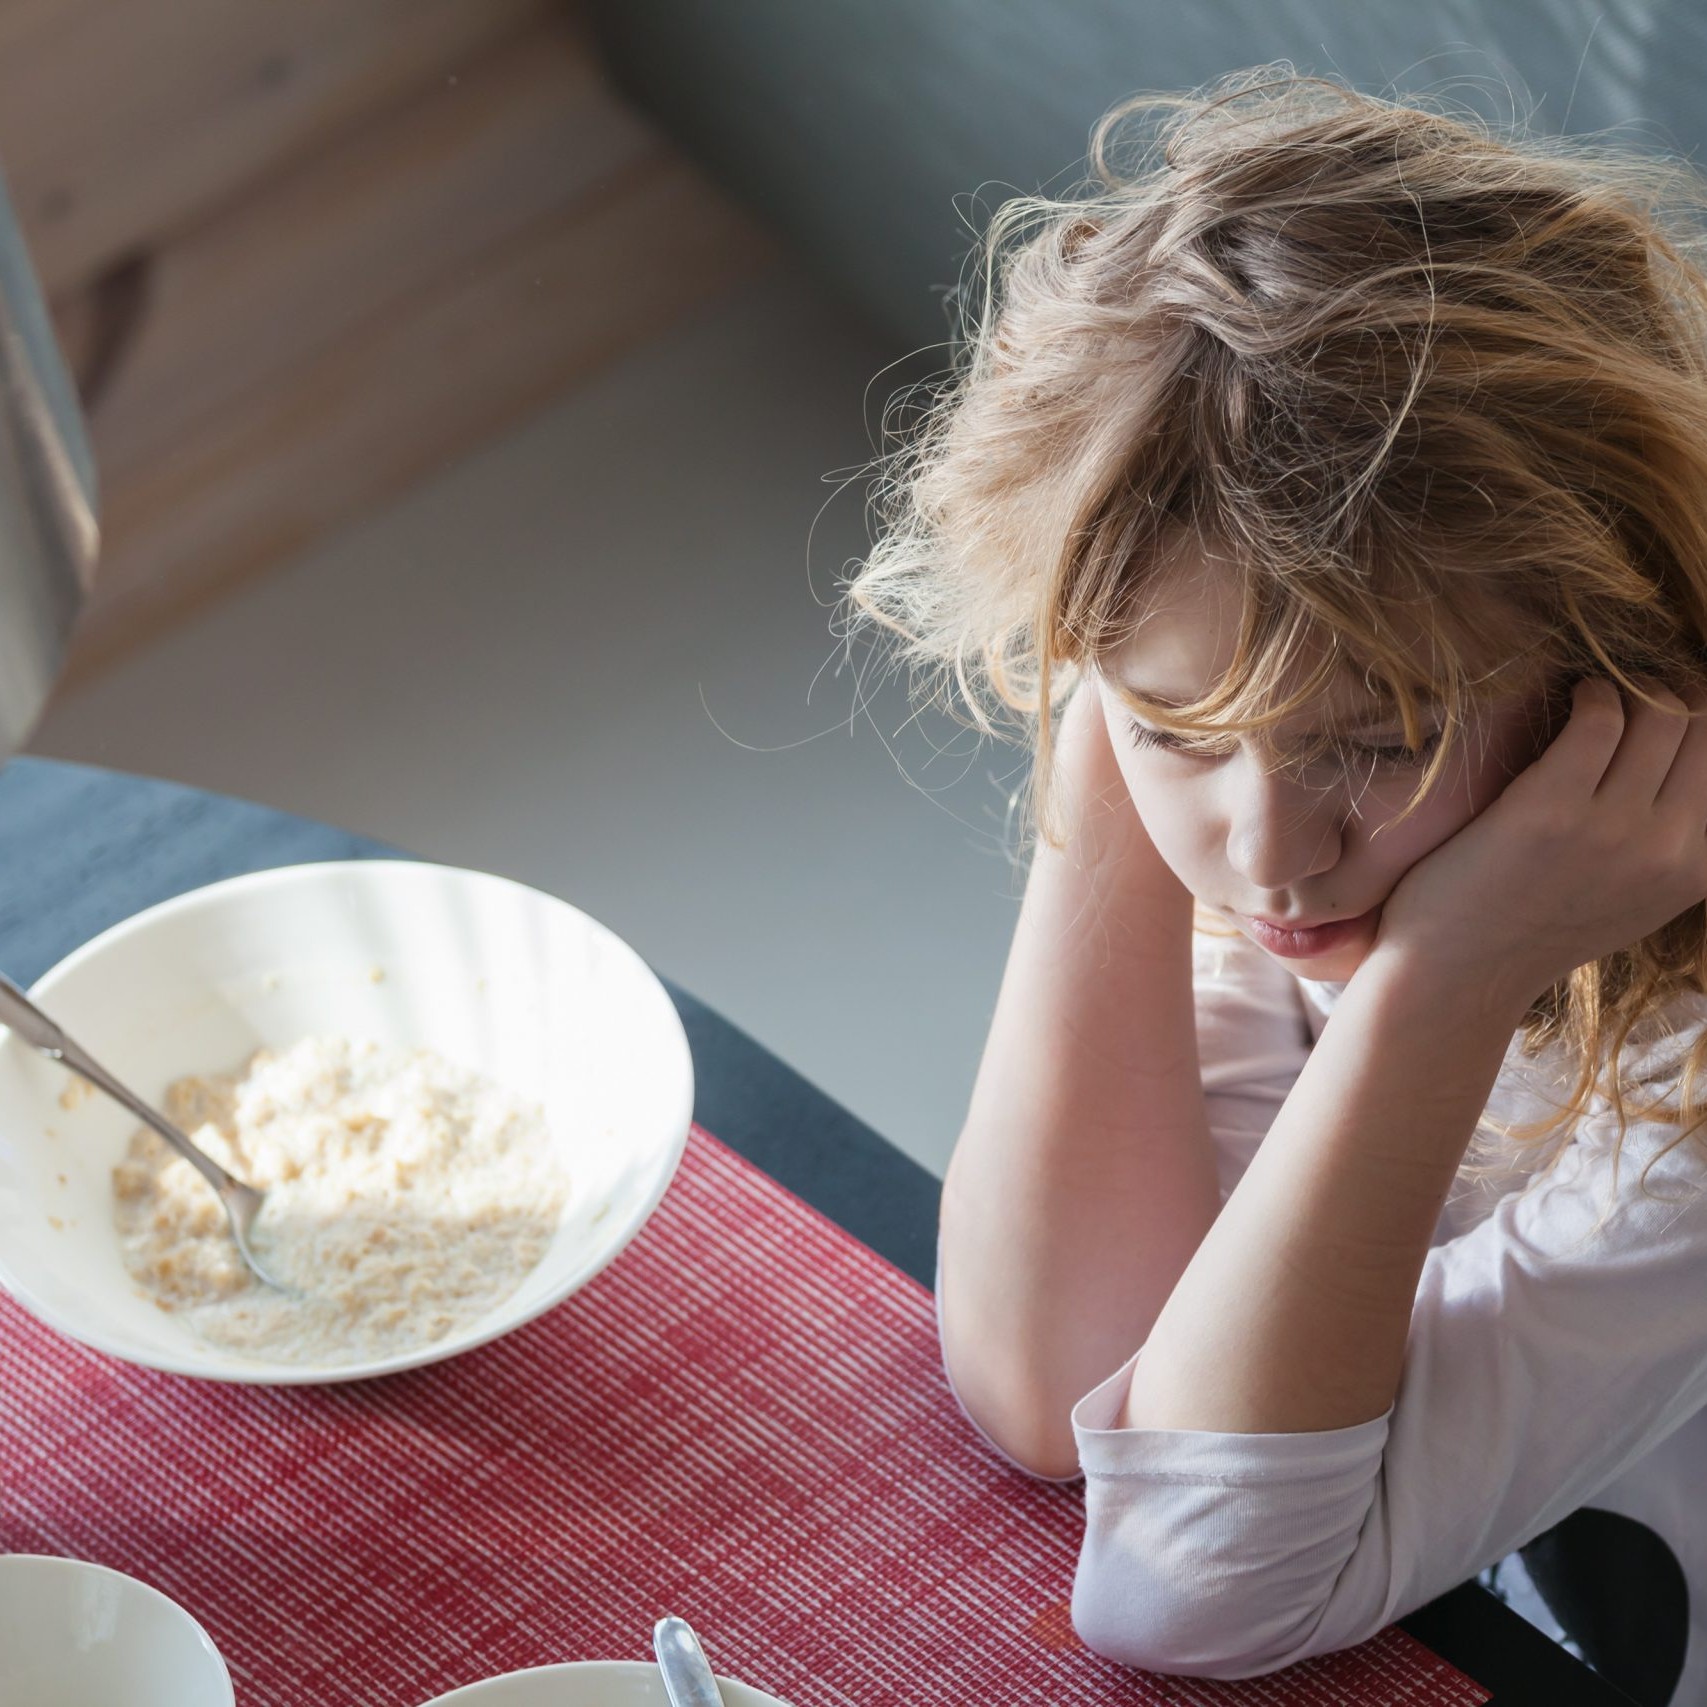 ¿Cómo identificar trastornos alimenticios en adolescentes? 12 señales que lo delatan